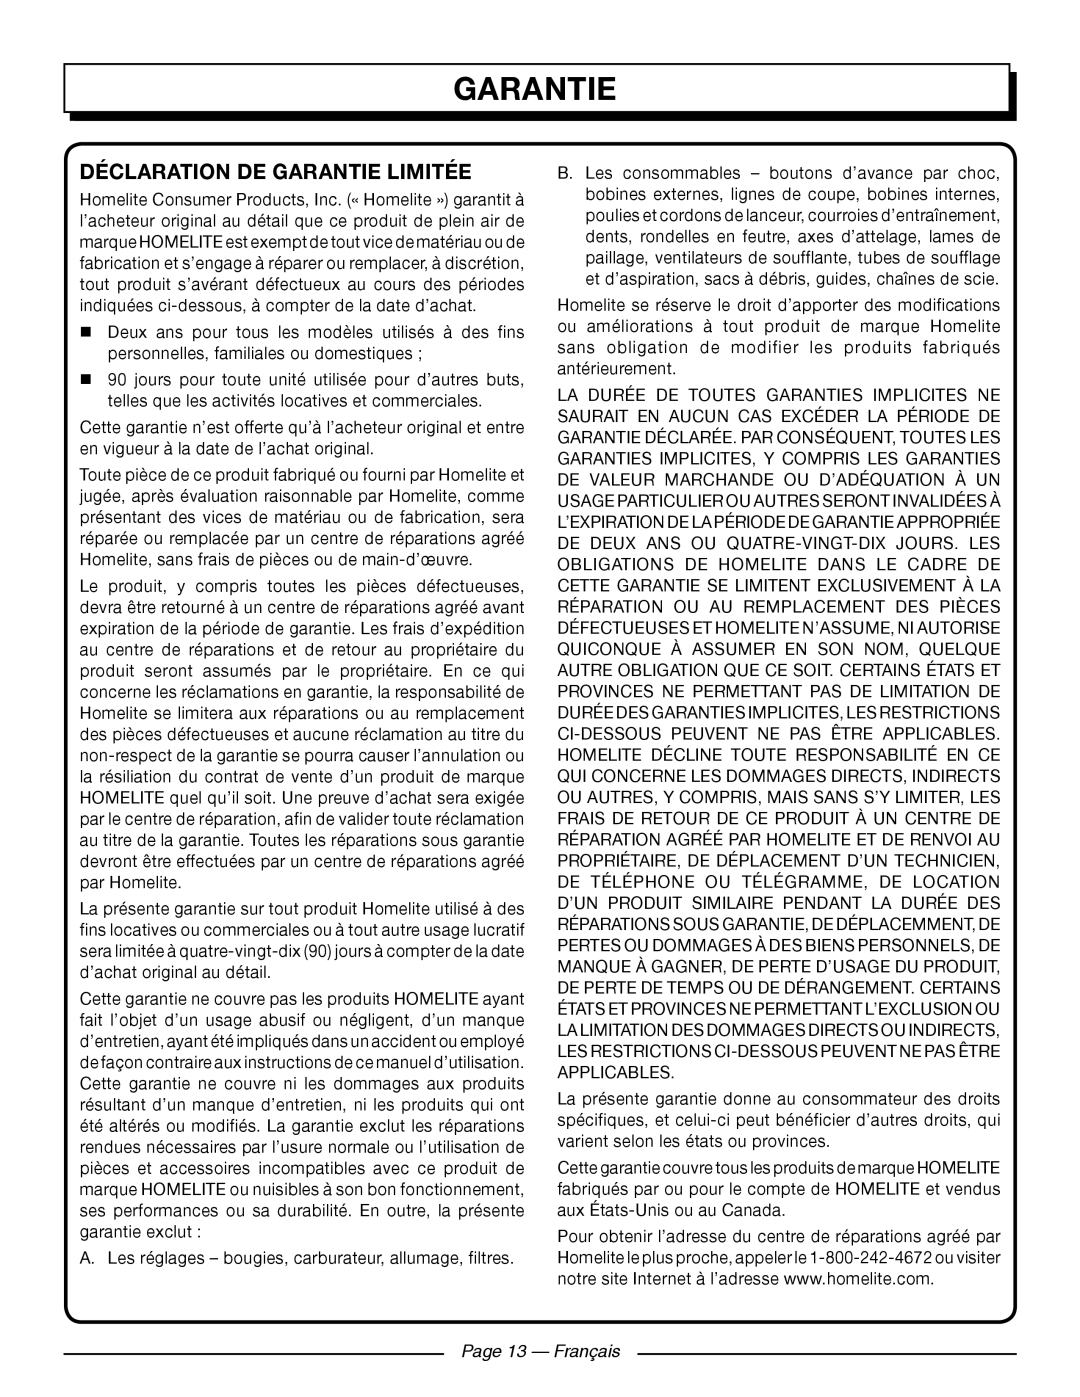 Homelite UT41121 manuel dutilisation Déclaration De Garantie Limitée, Page 13 - Français 